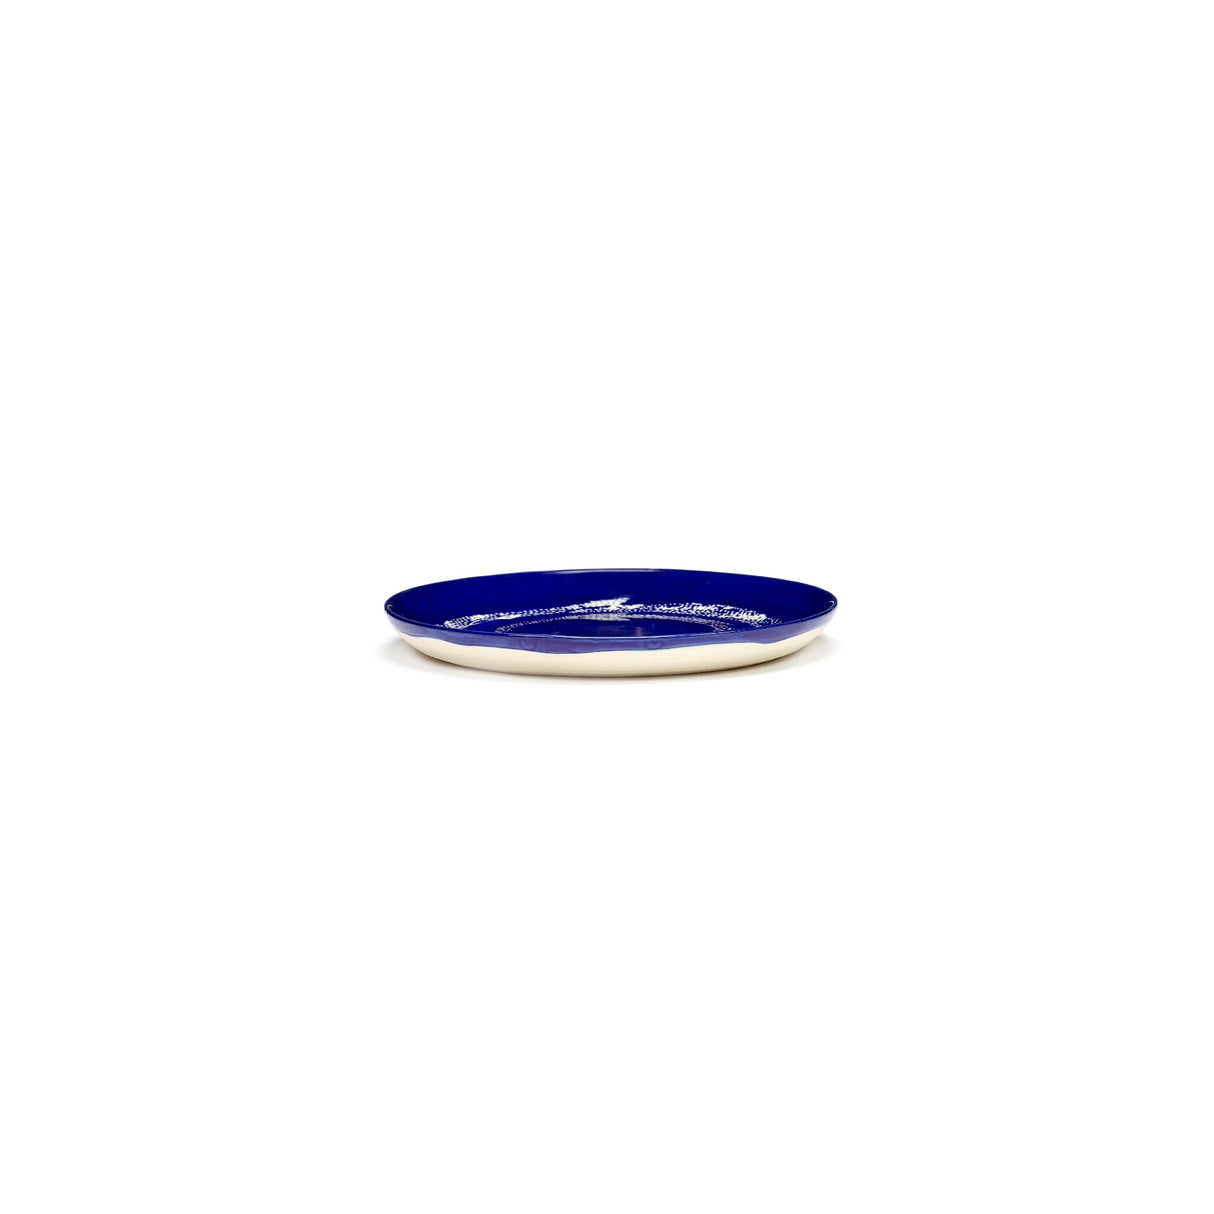 Ottolenghi Teller 2-er Lapis Lazuli Swirl-Dots, Blau-Weiß, D 19 cm